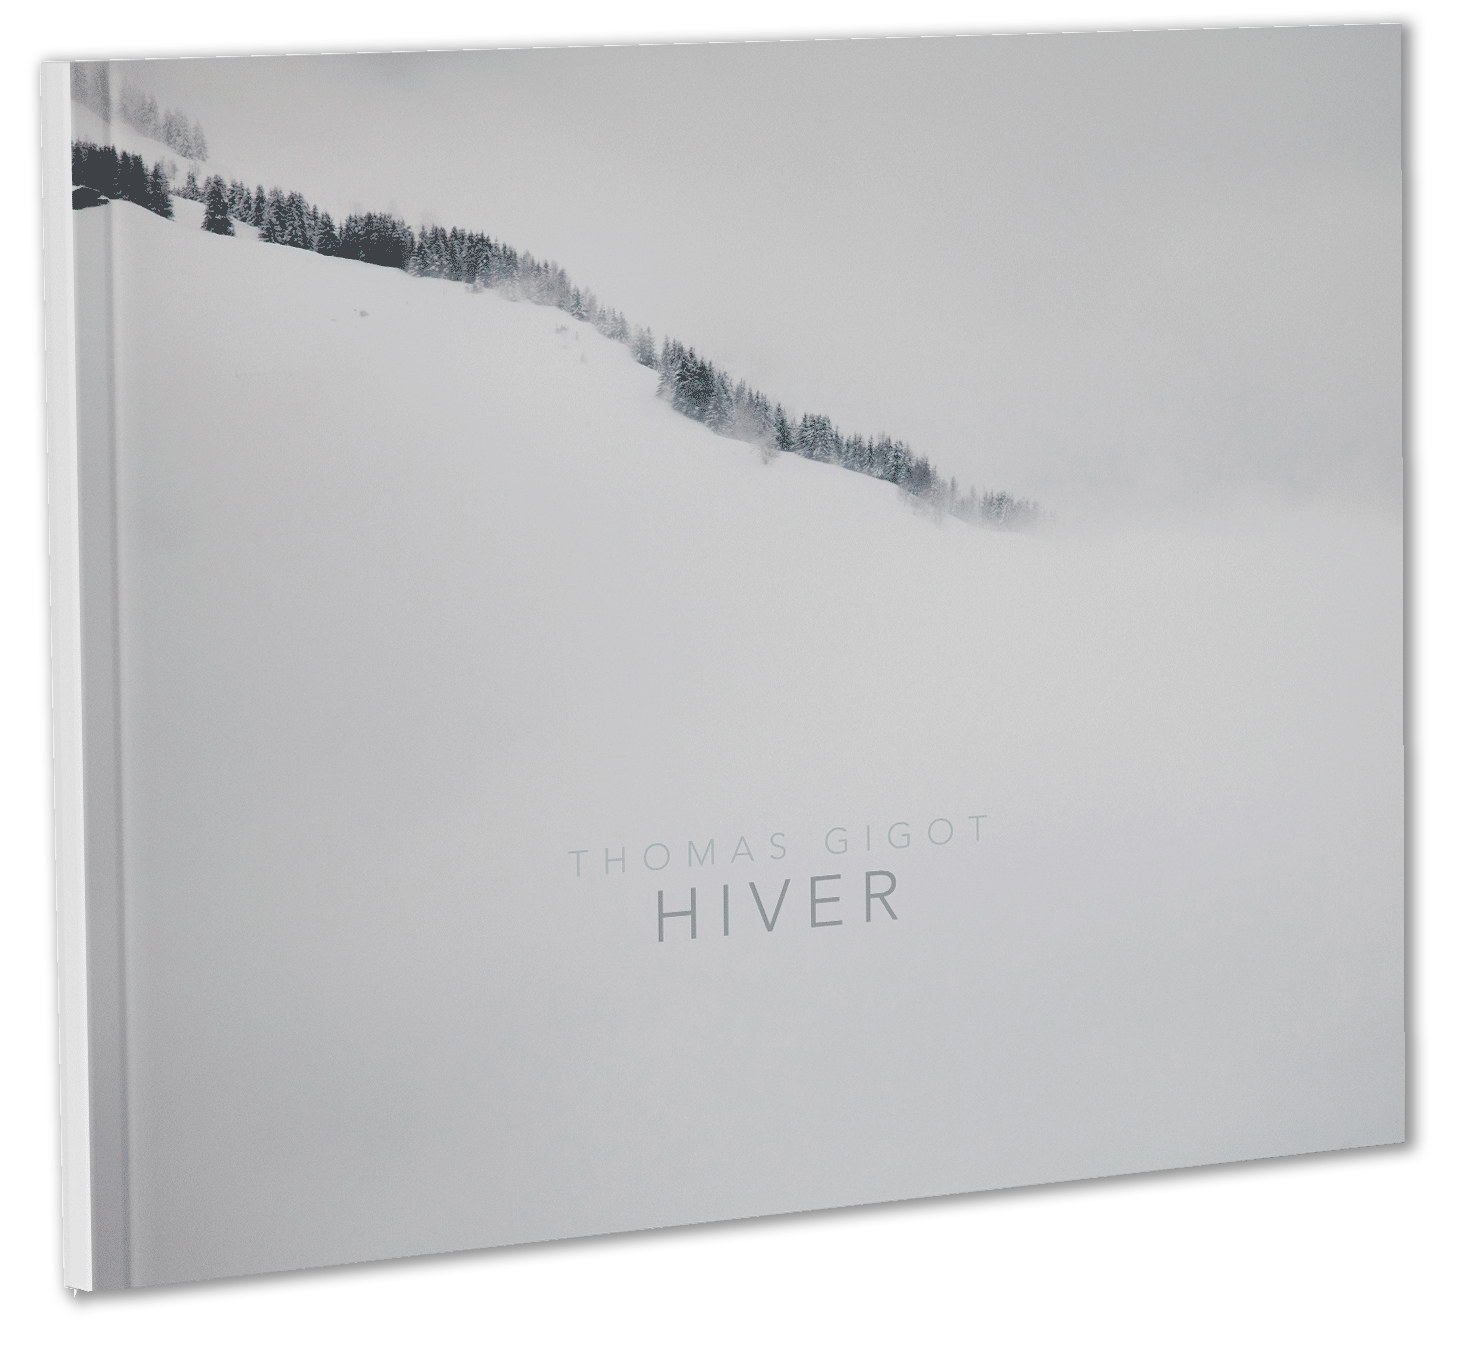 Acheter le livre Hiver